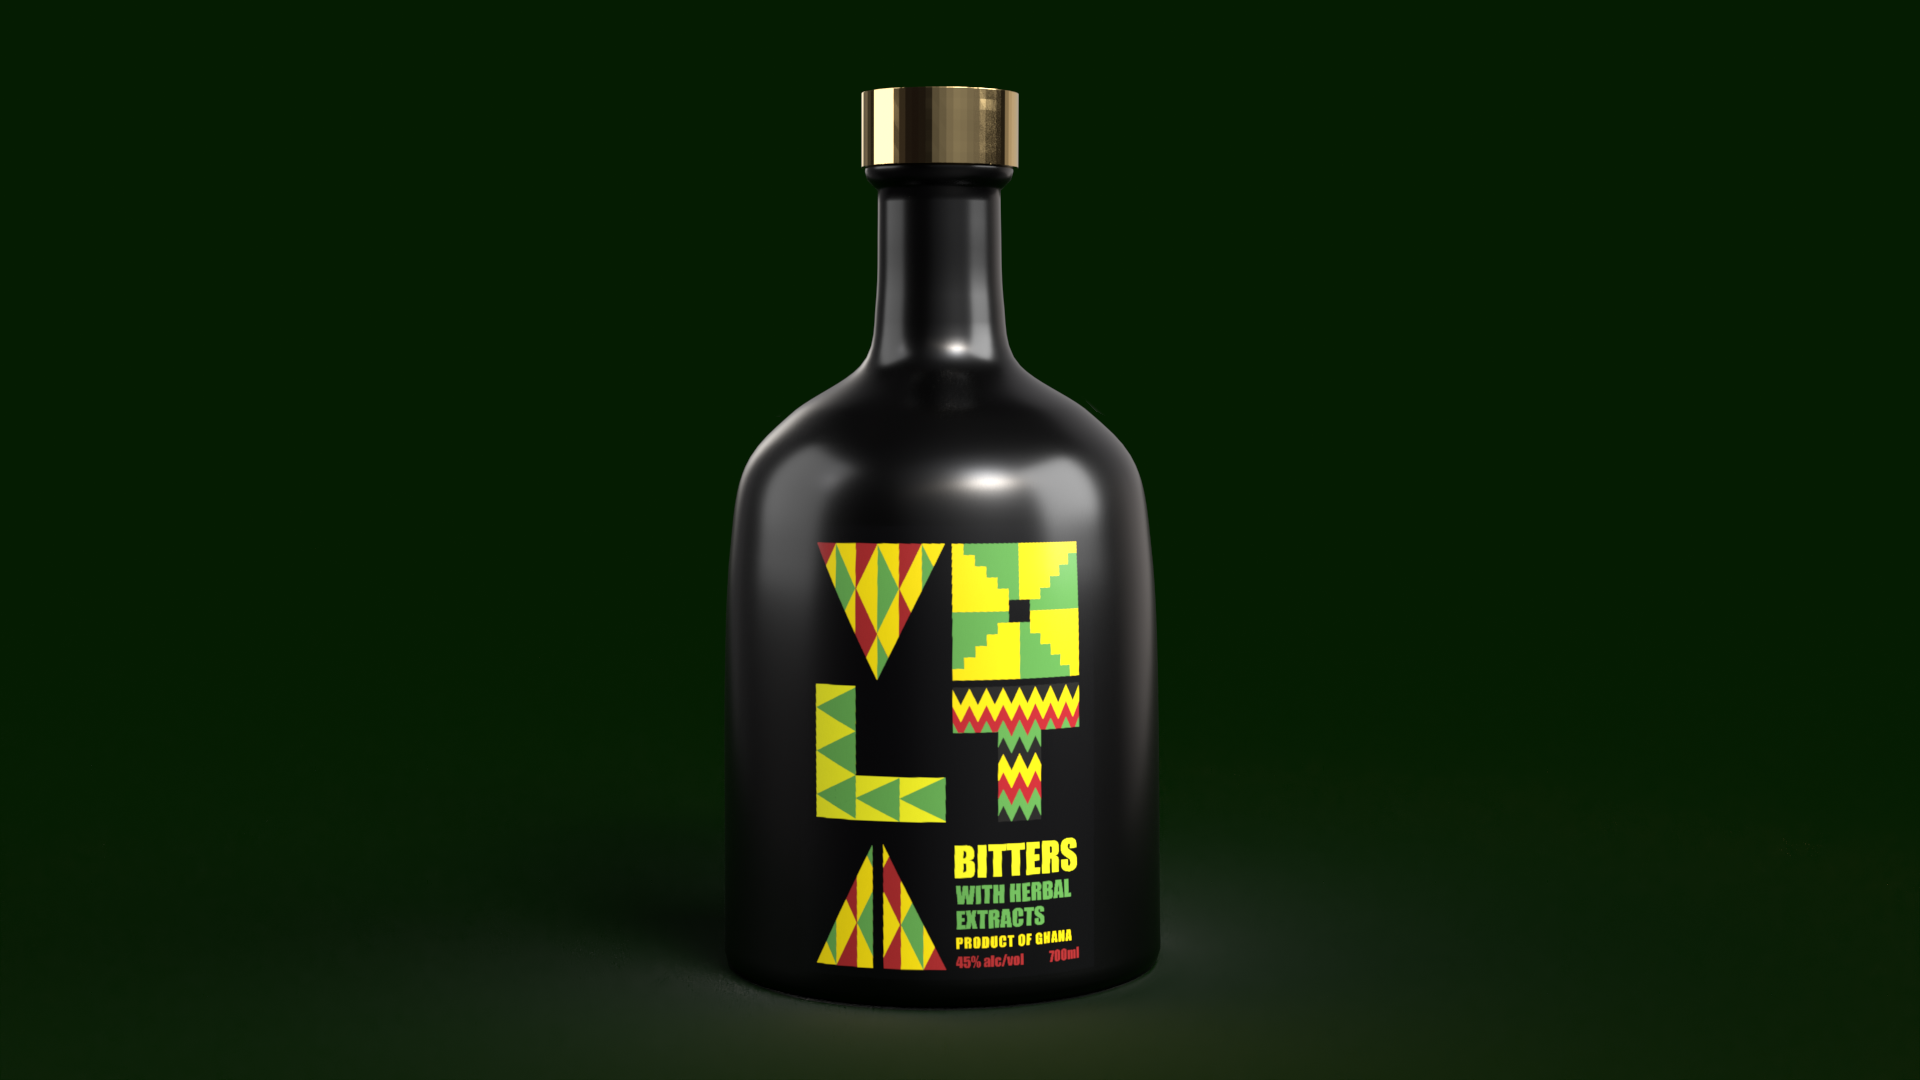 Packaging for a spirit brand by Joseph Tamakloe-Bonaca on the spirit bottle against black backdrop.